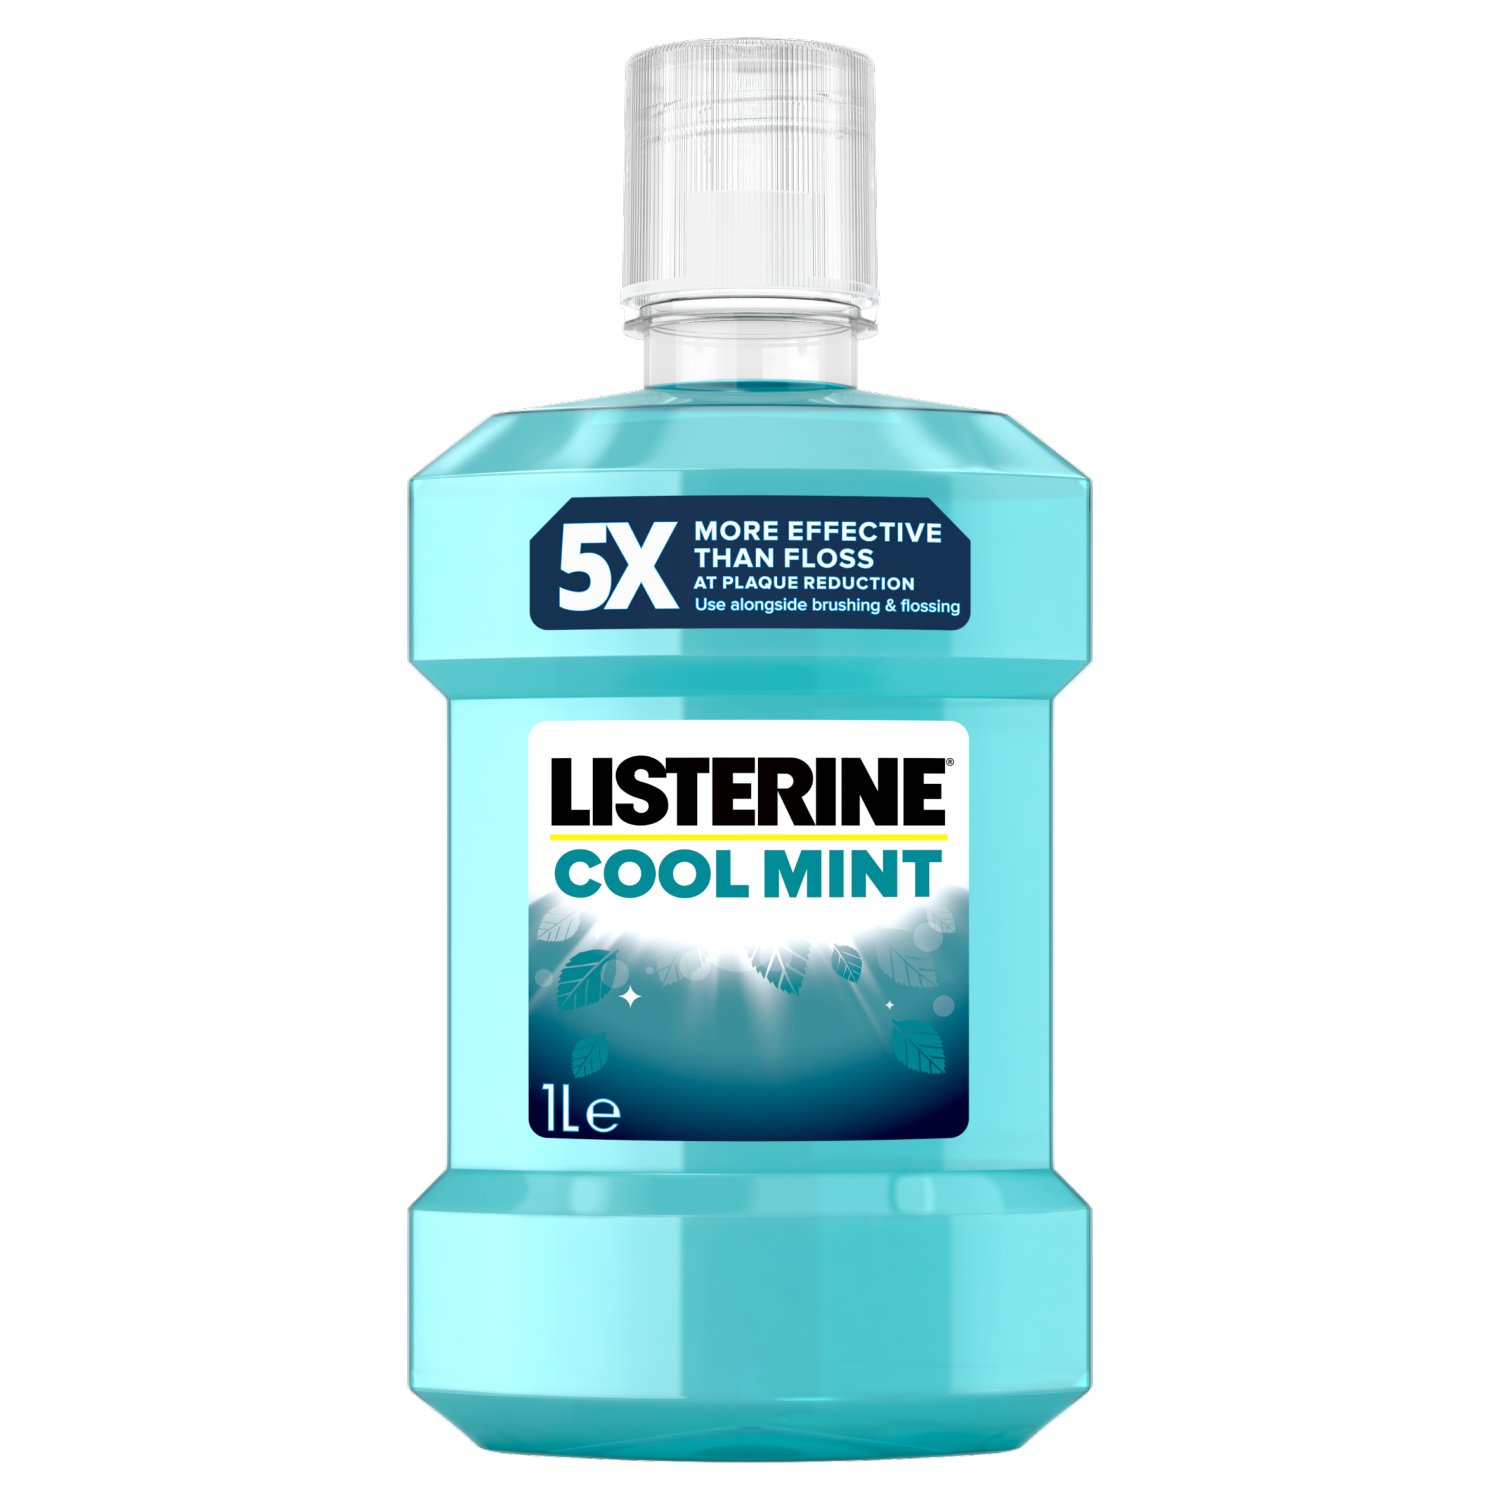 Listerine Cool Mint Mouthwash (1 L)